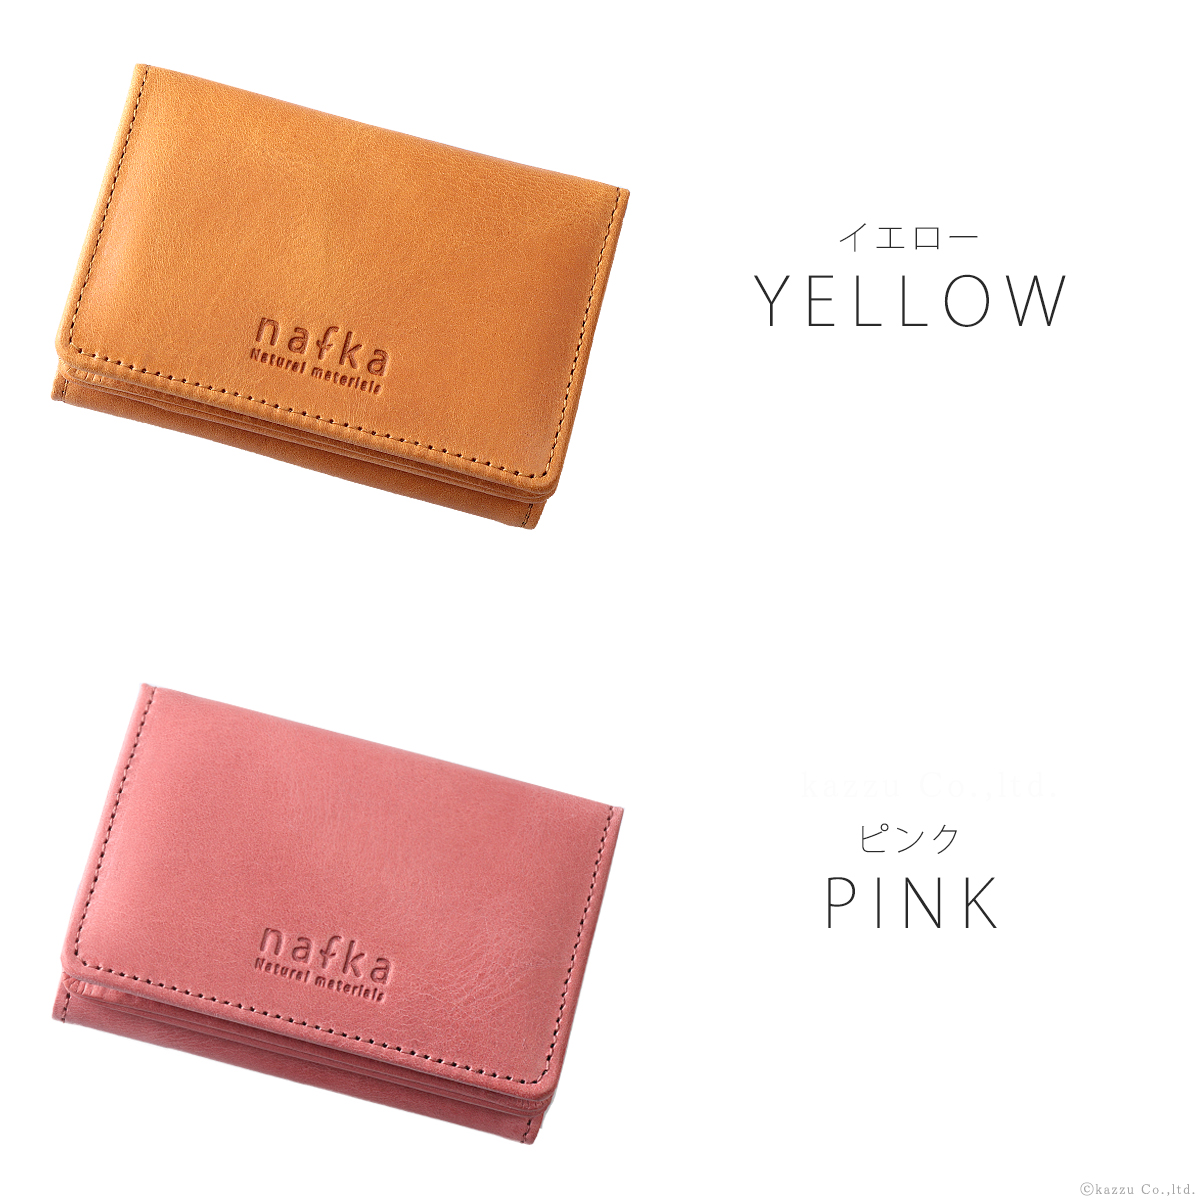 nafka 三つ折り財布は女性が好むカラーもご用意しています